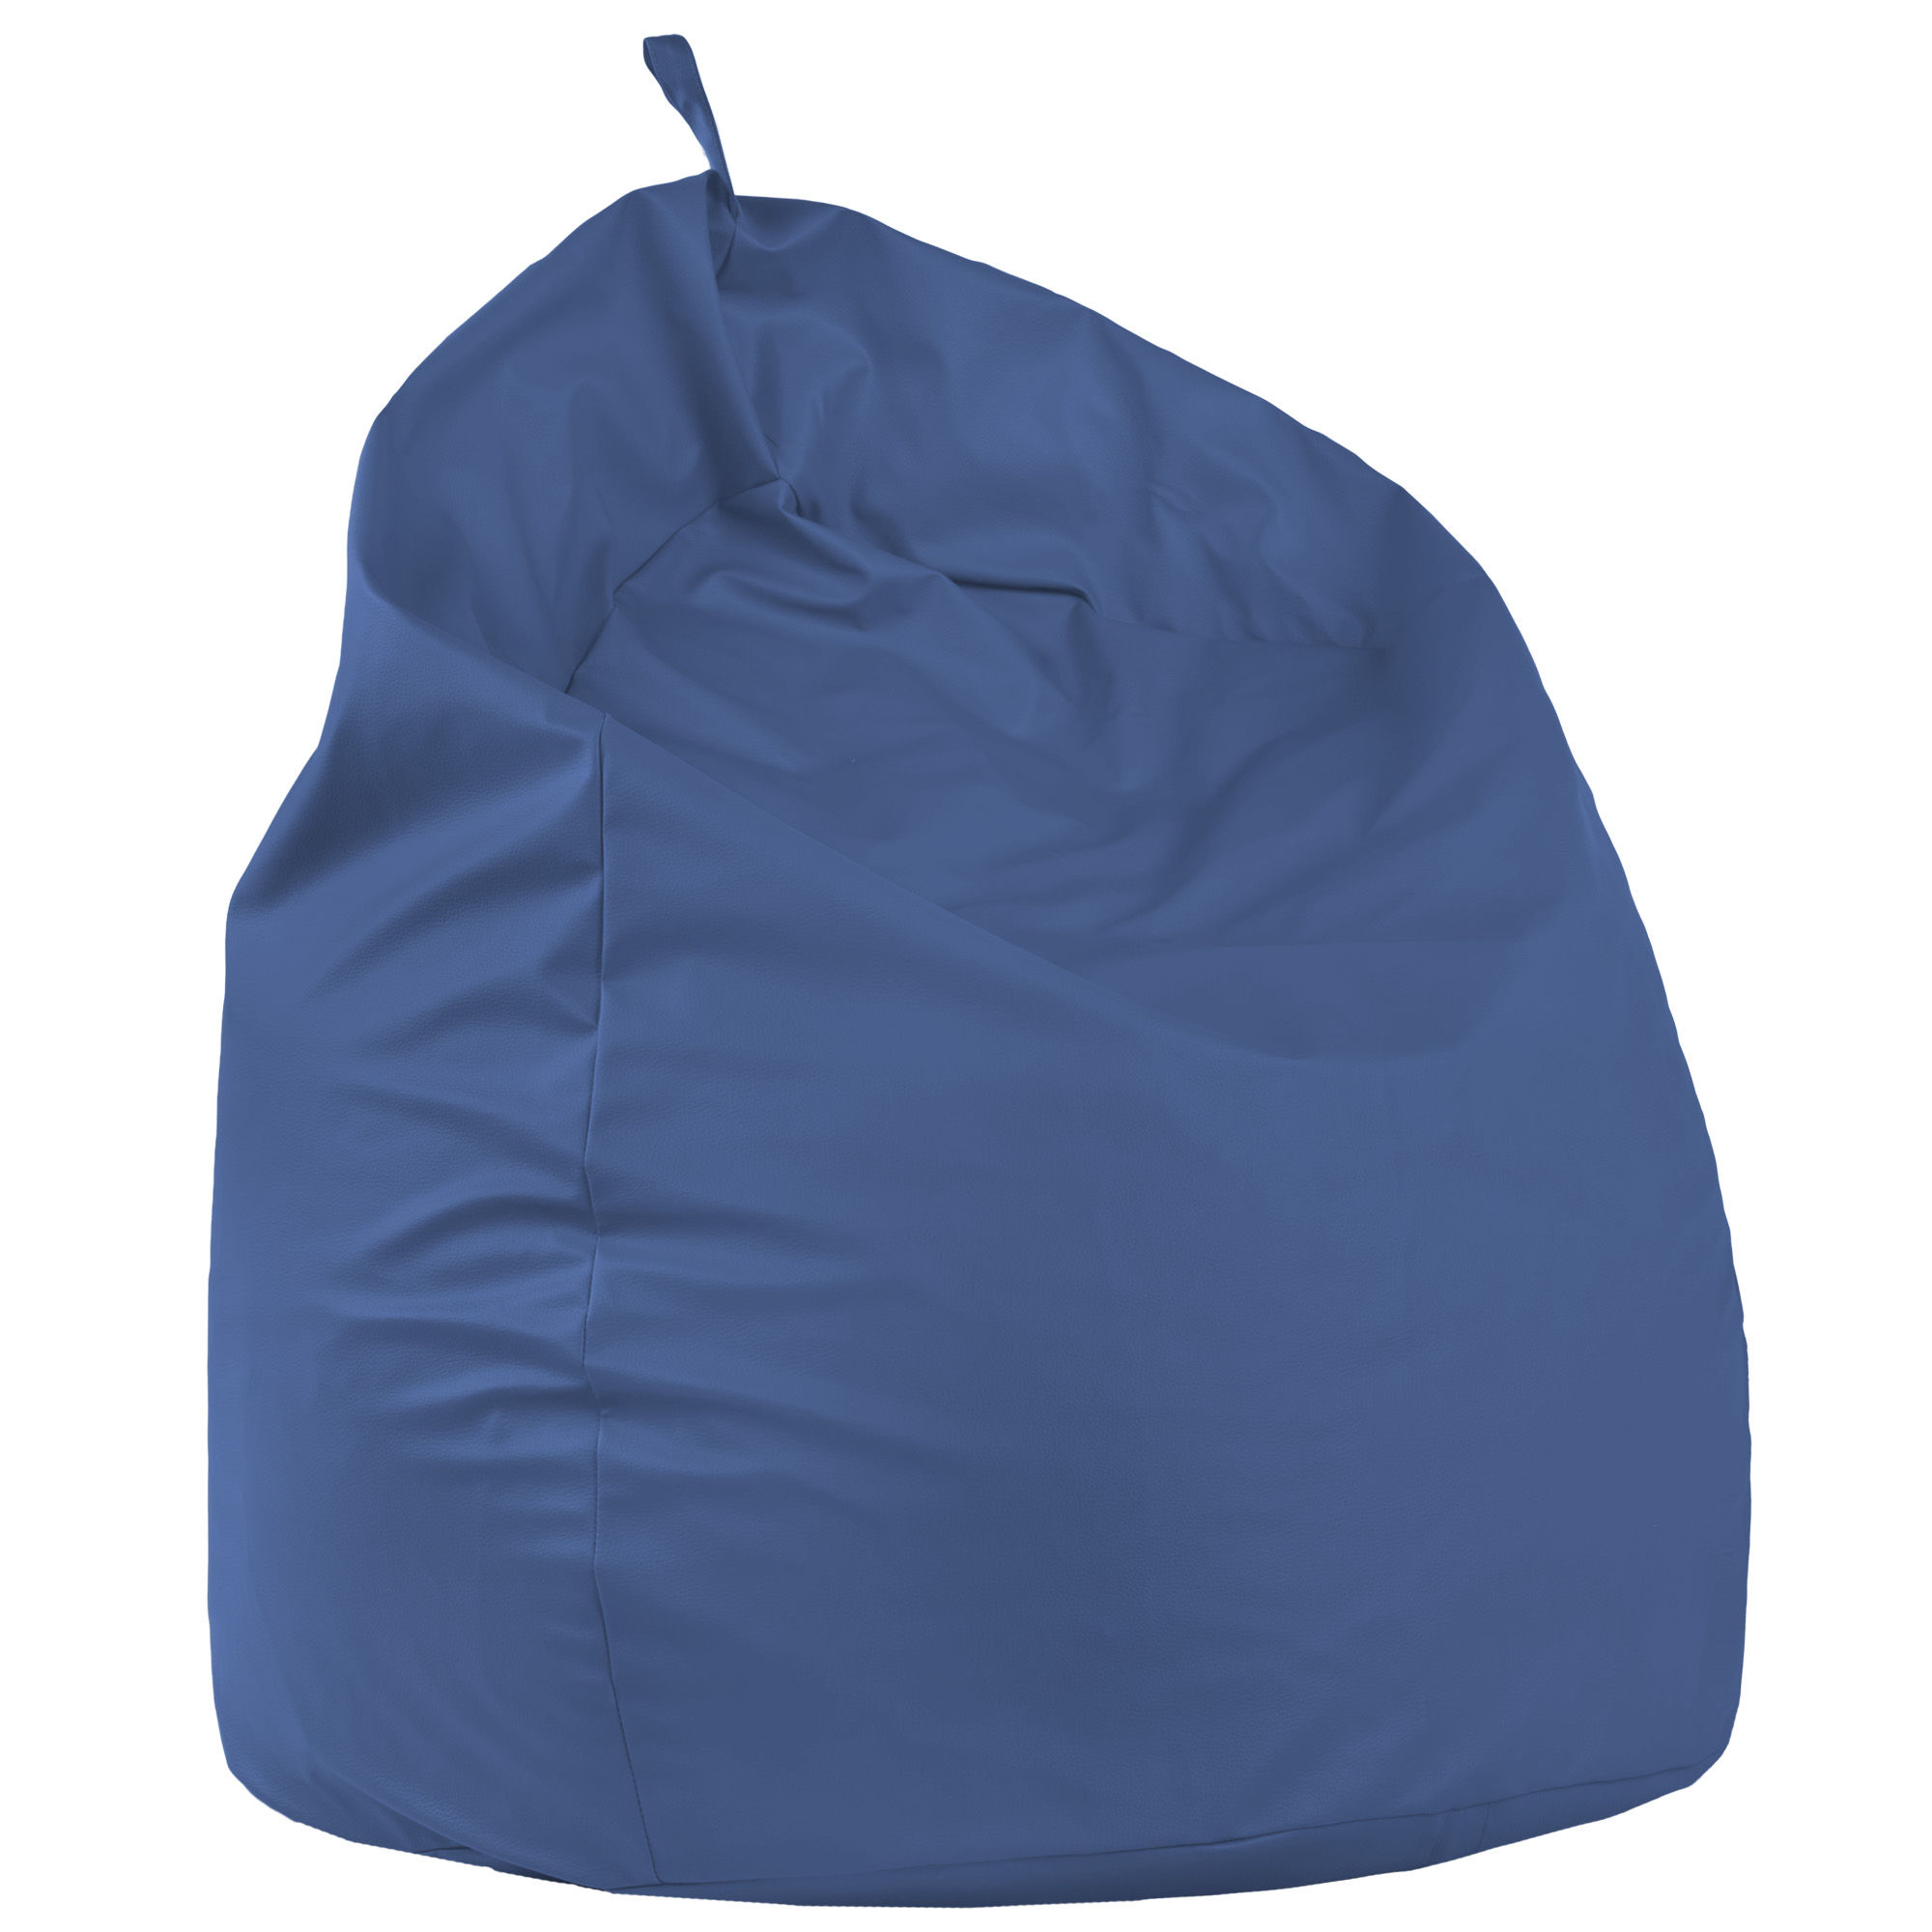 Pouf sacco gigante xxl blu in ecopelle. Pouf fagiolo grande da salotto